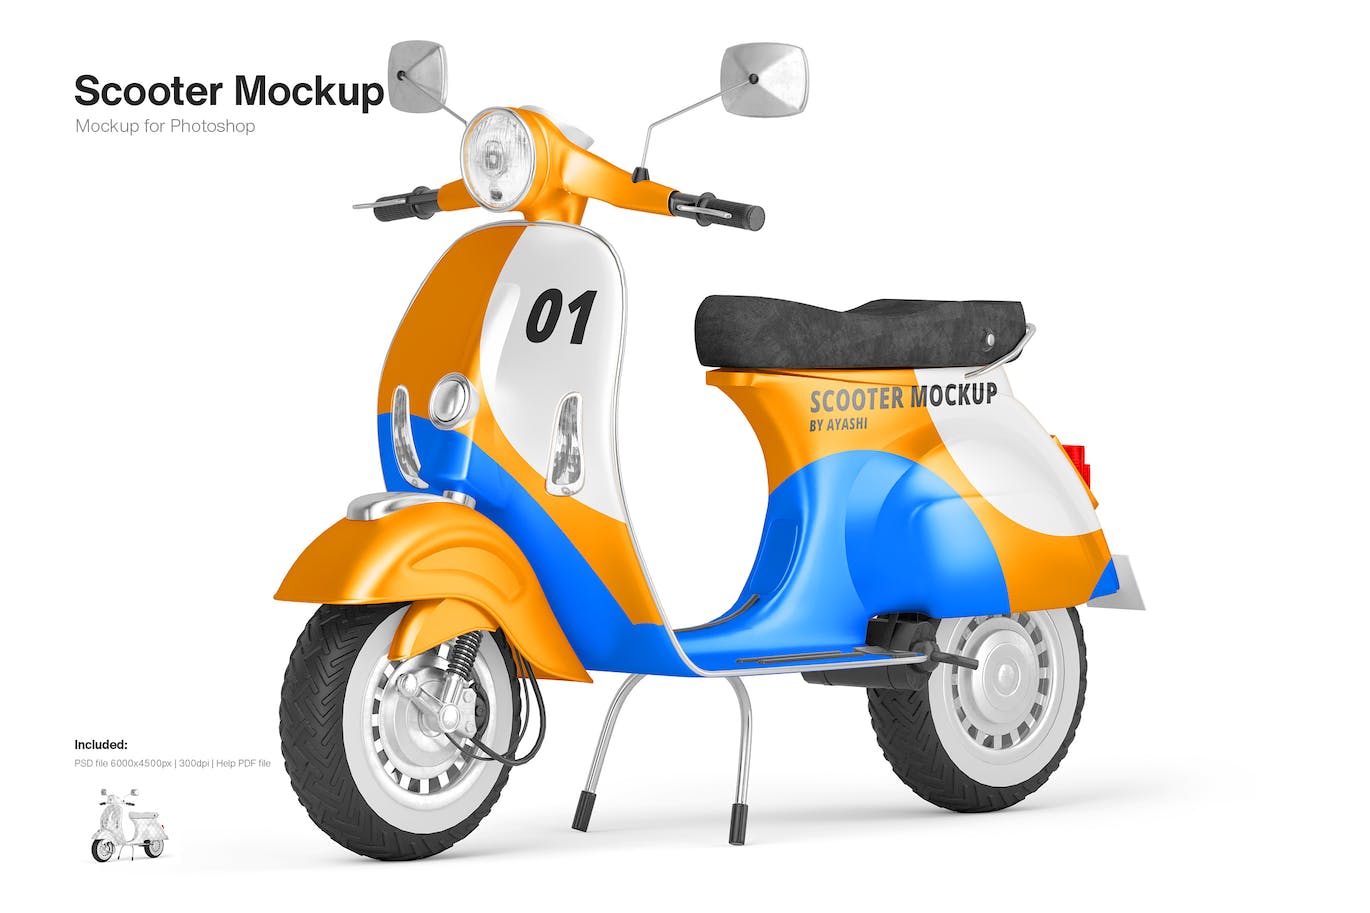 小型摩托车车身广告设计样机模板 (PSD)